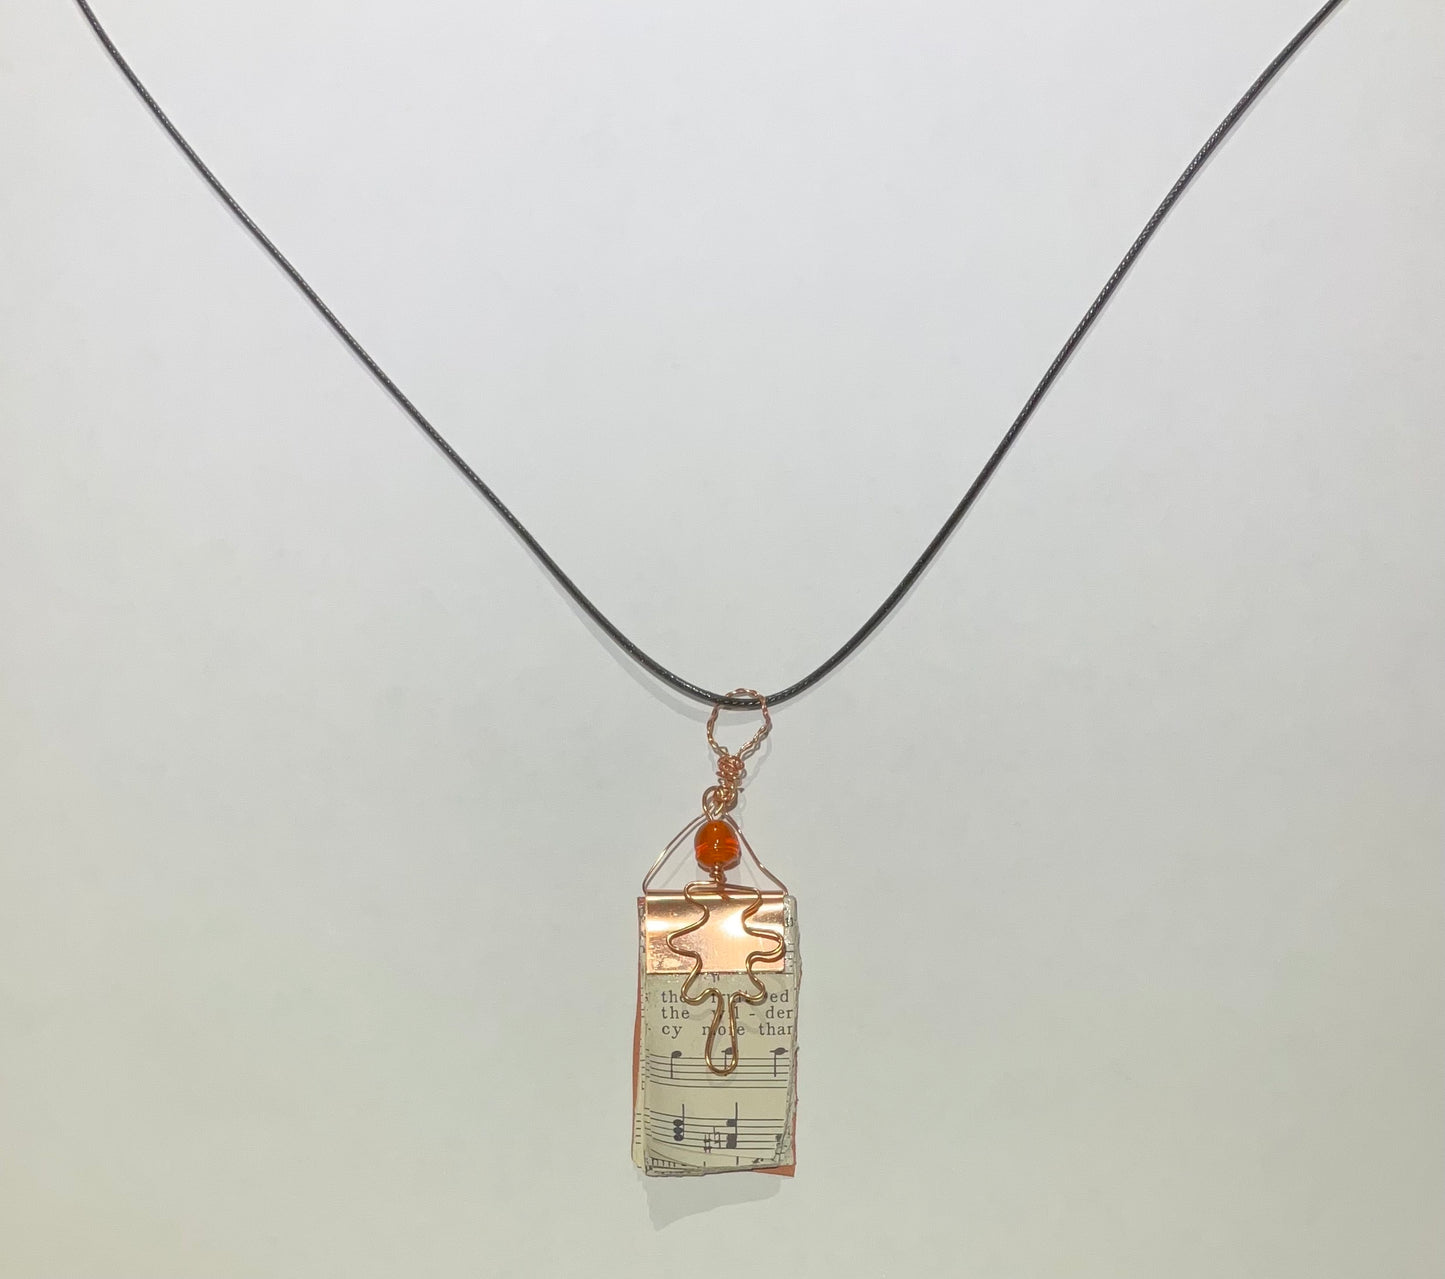 Necklaces - Sandra Nastlerode-Hale